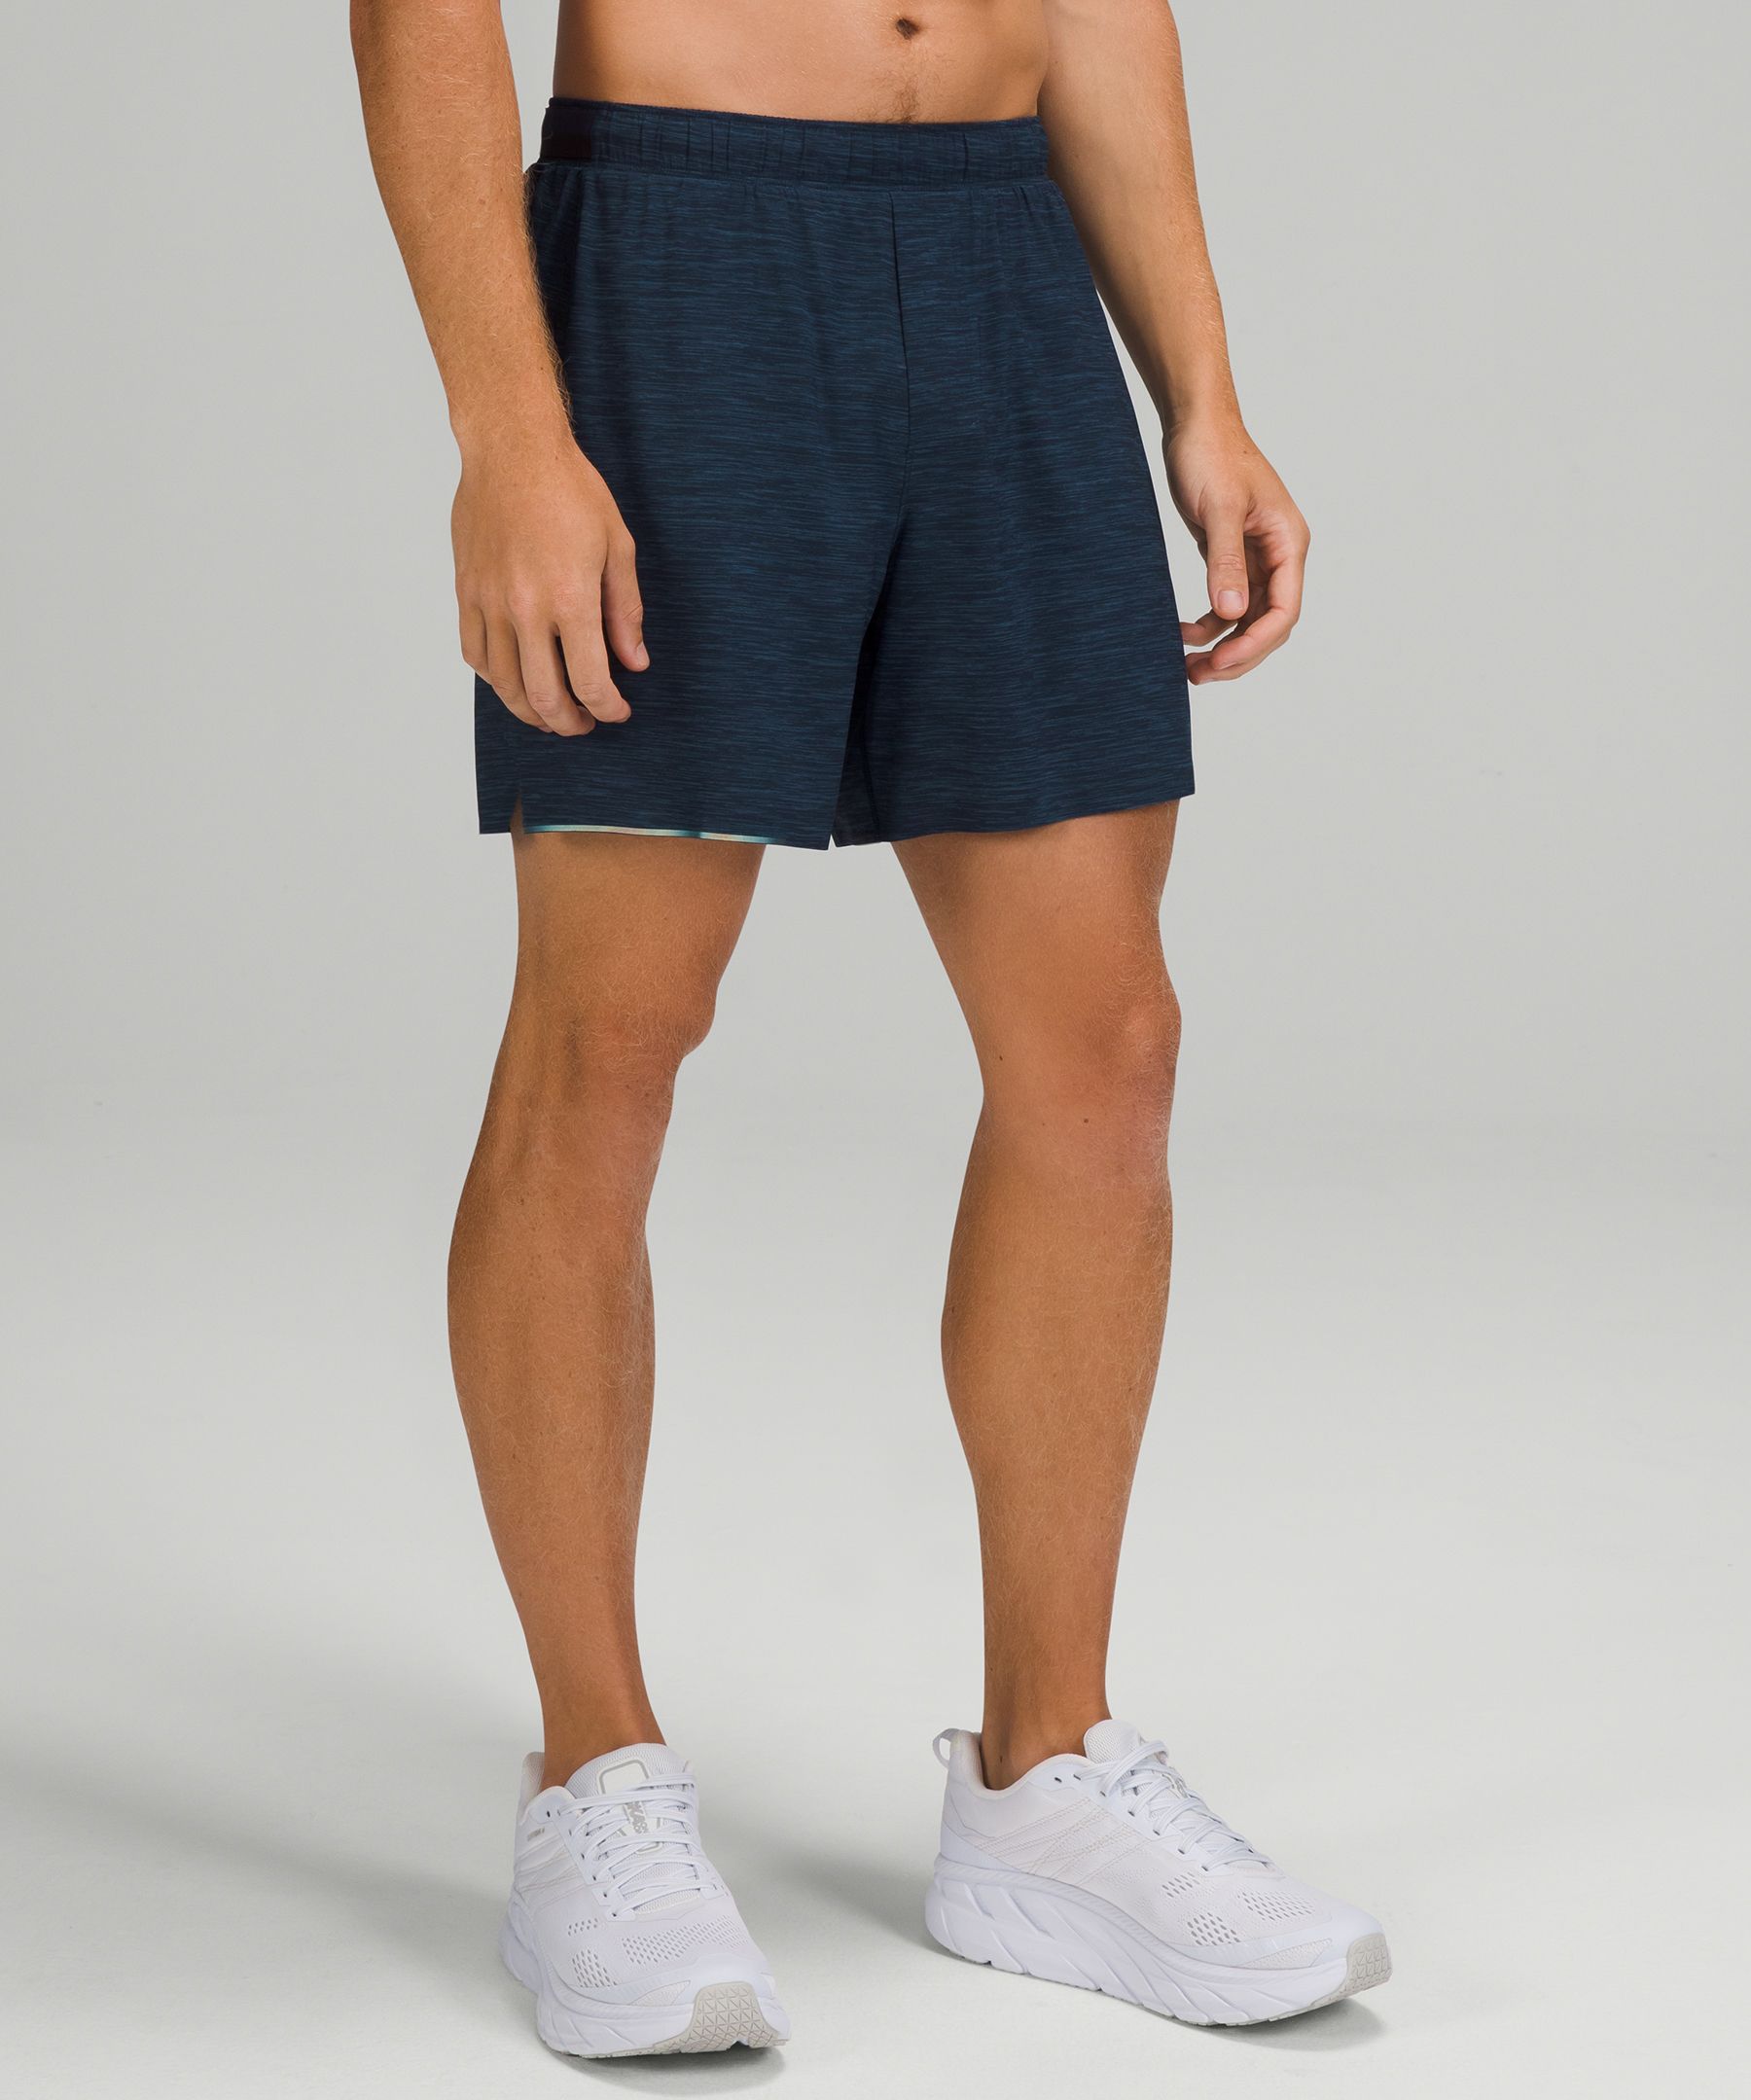 lululemon clearance shorts